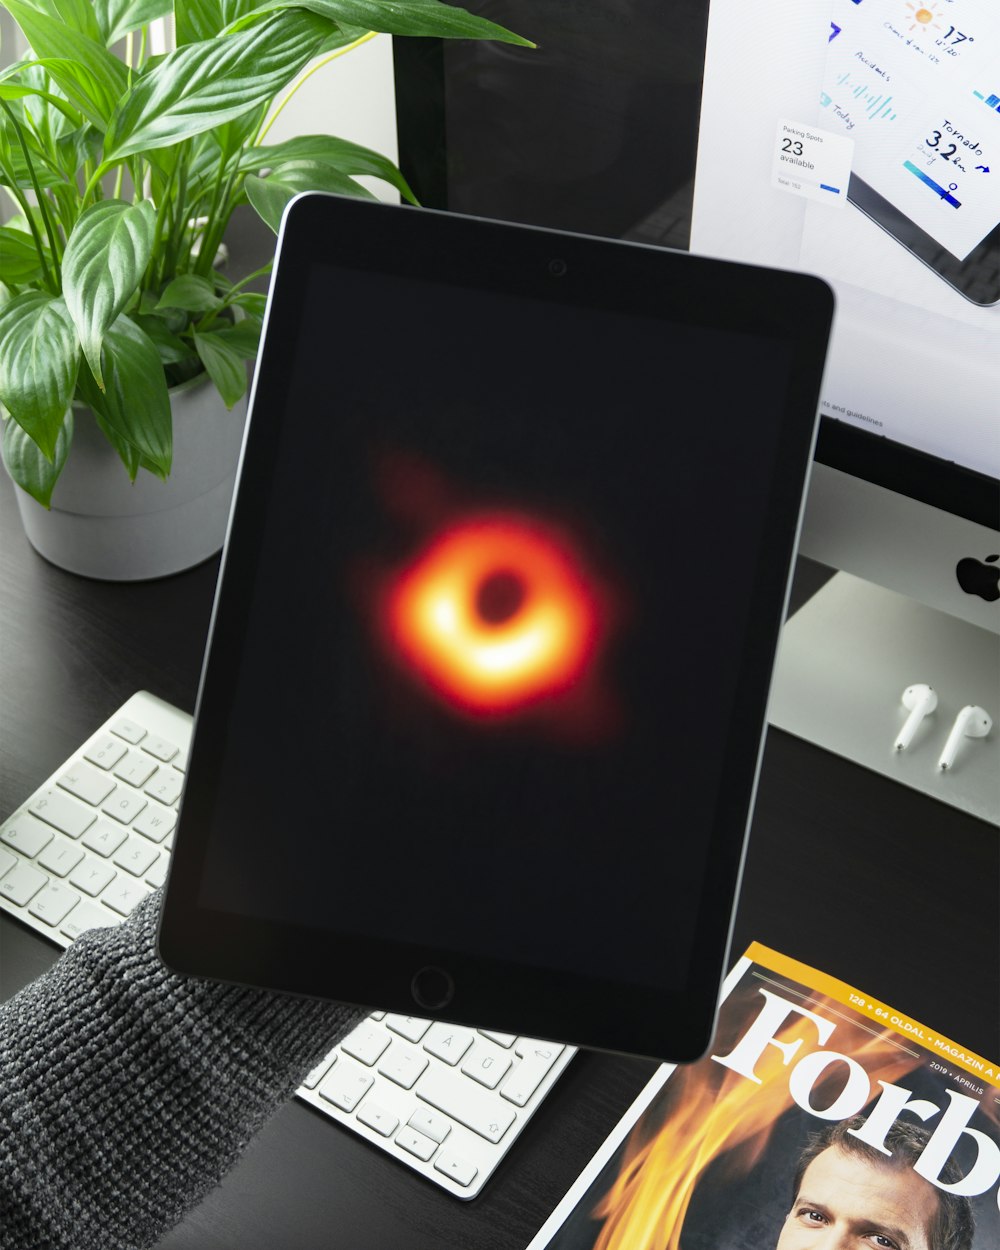 iPad affichant un cercle rouge